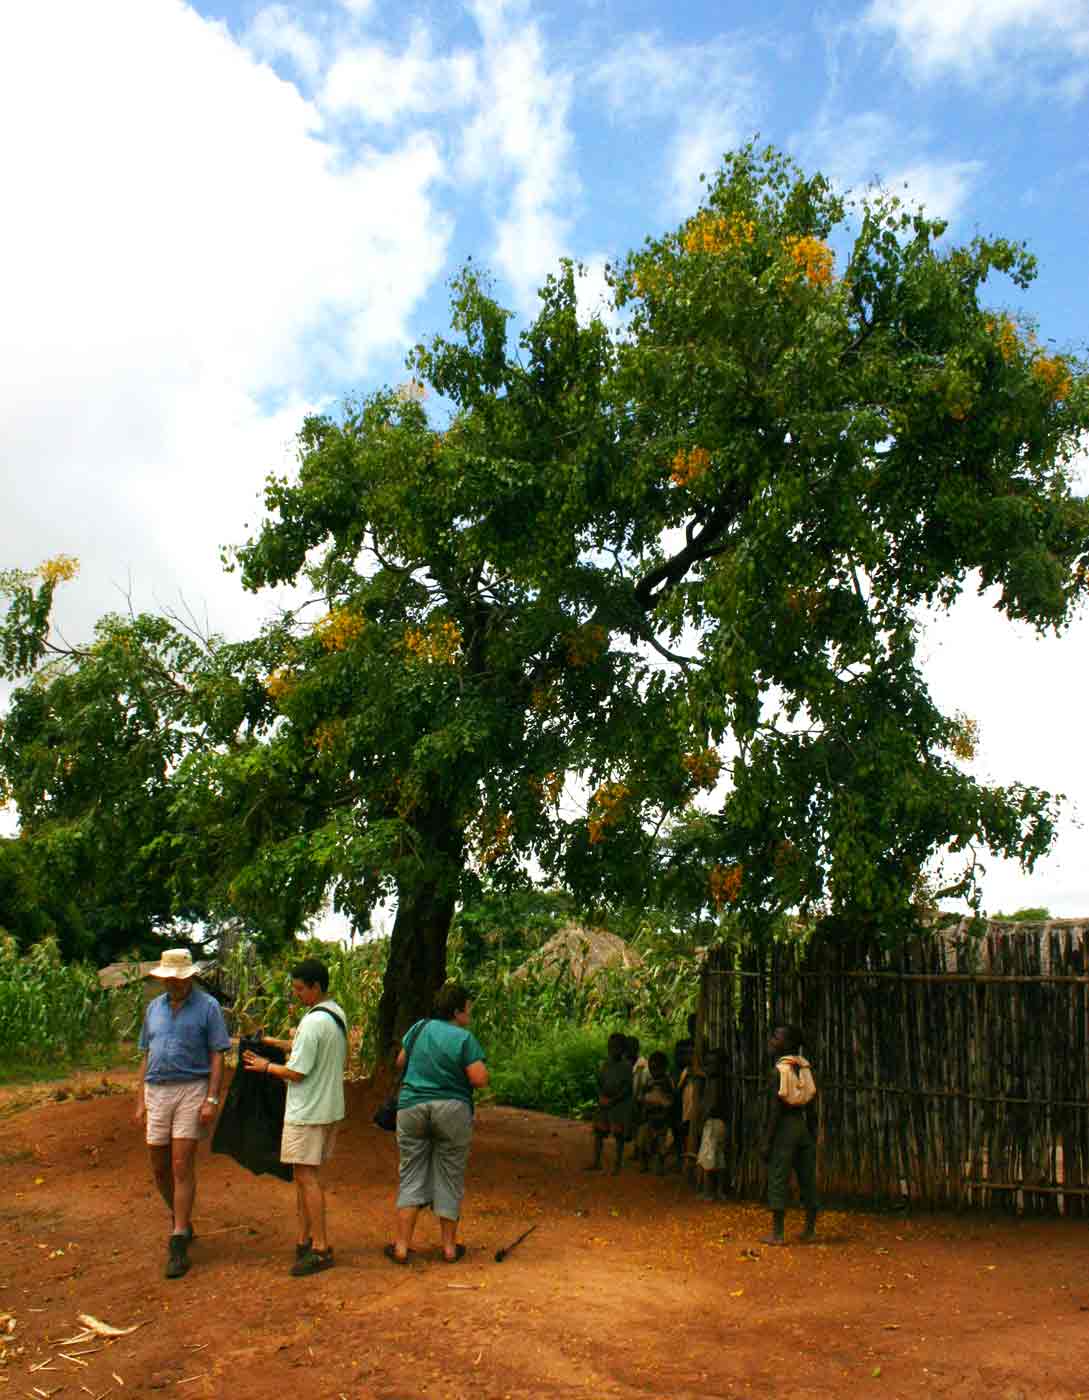 Pterocarpus rotundifolius subsp. polyanthus